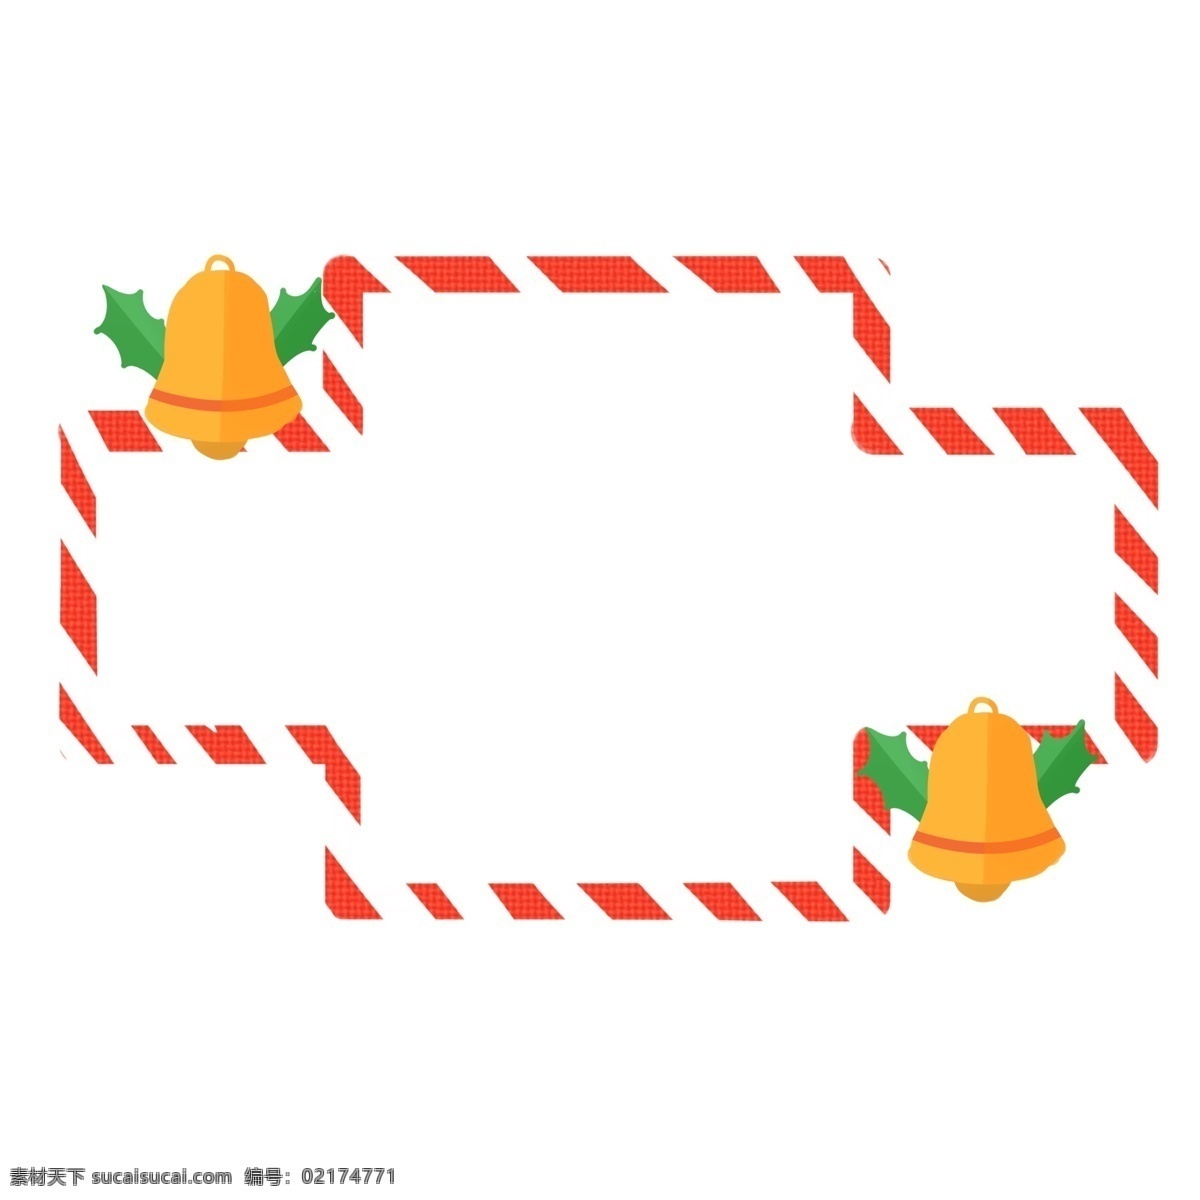 红色 条纹 铃铛 边框 红色条纹边框 圣诞节 装饰 创意边框 时尚边框 黄色铃铛装饰 可爱圣诞边框